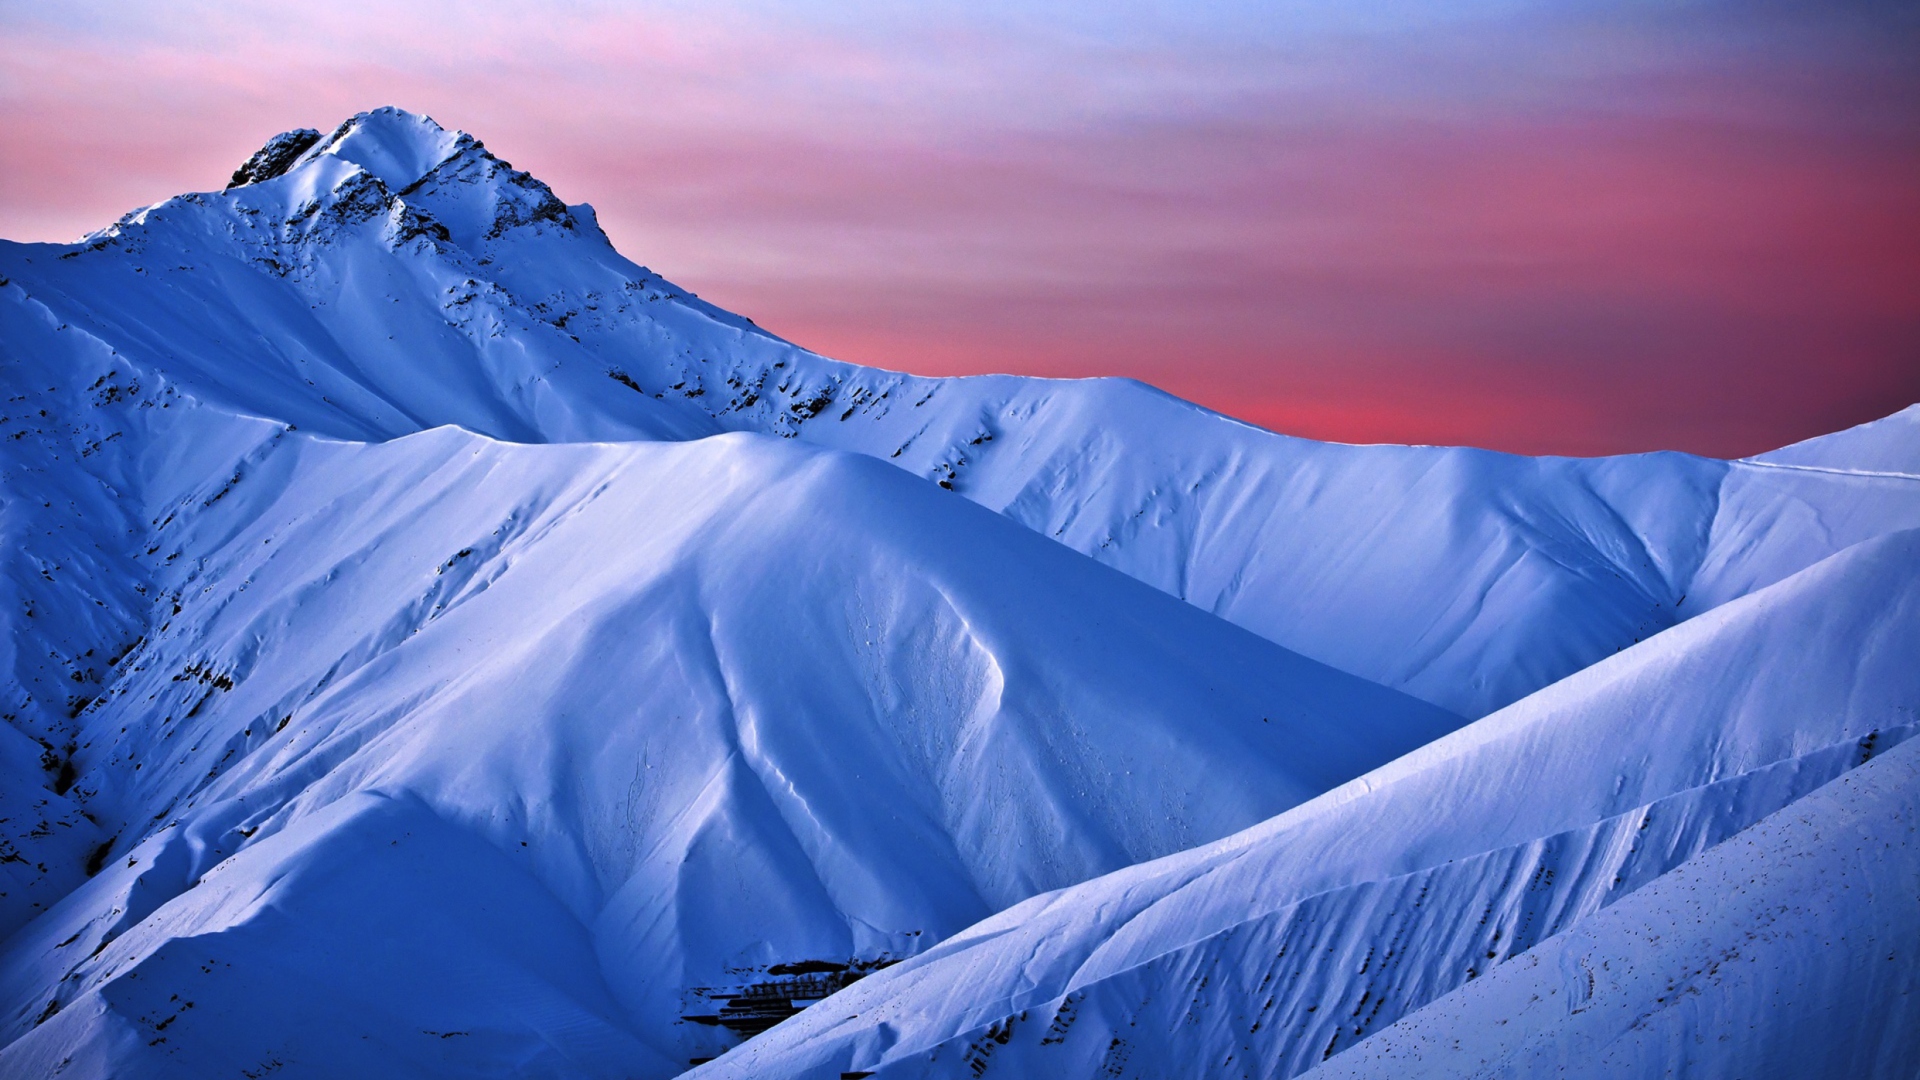 Обои Snowy Mountains And Purple Horizon 1920x1080